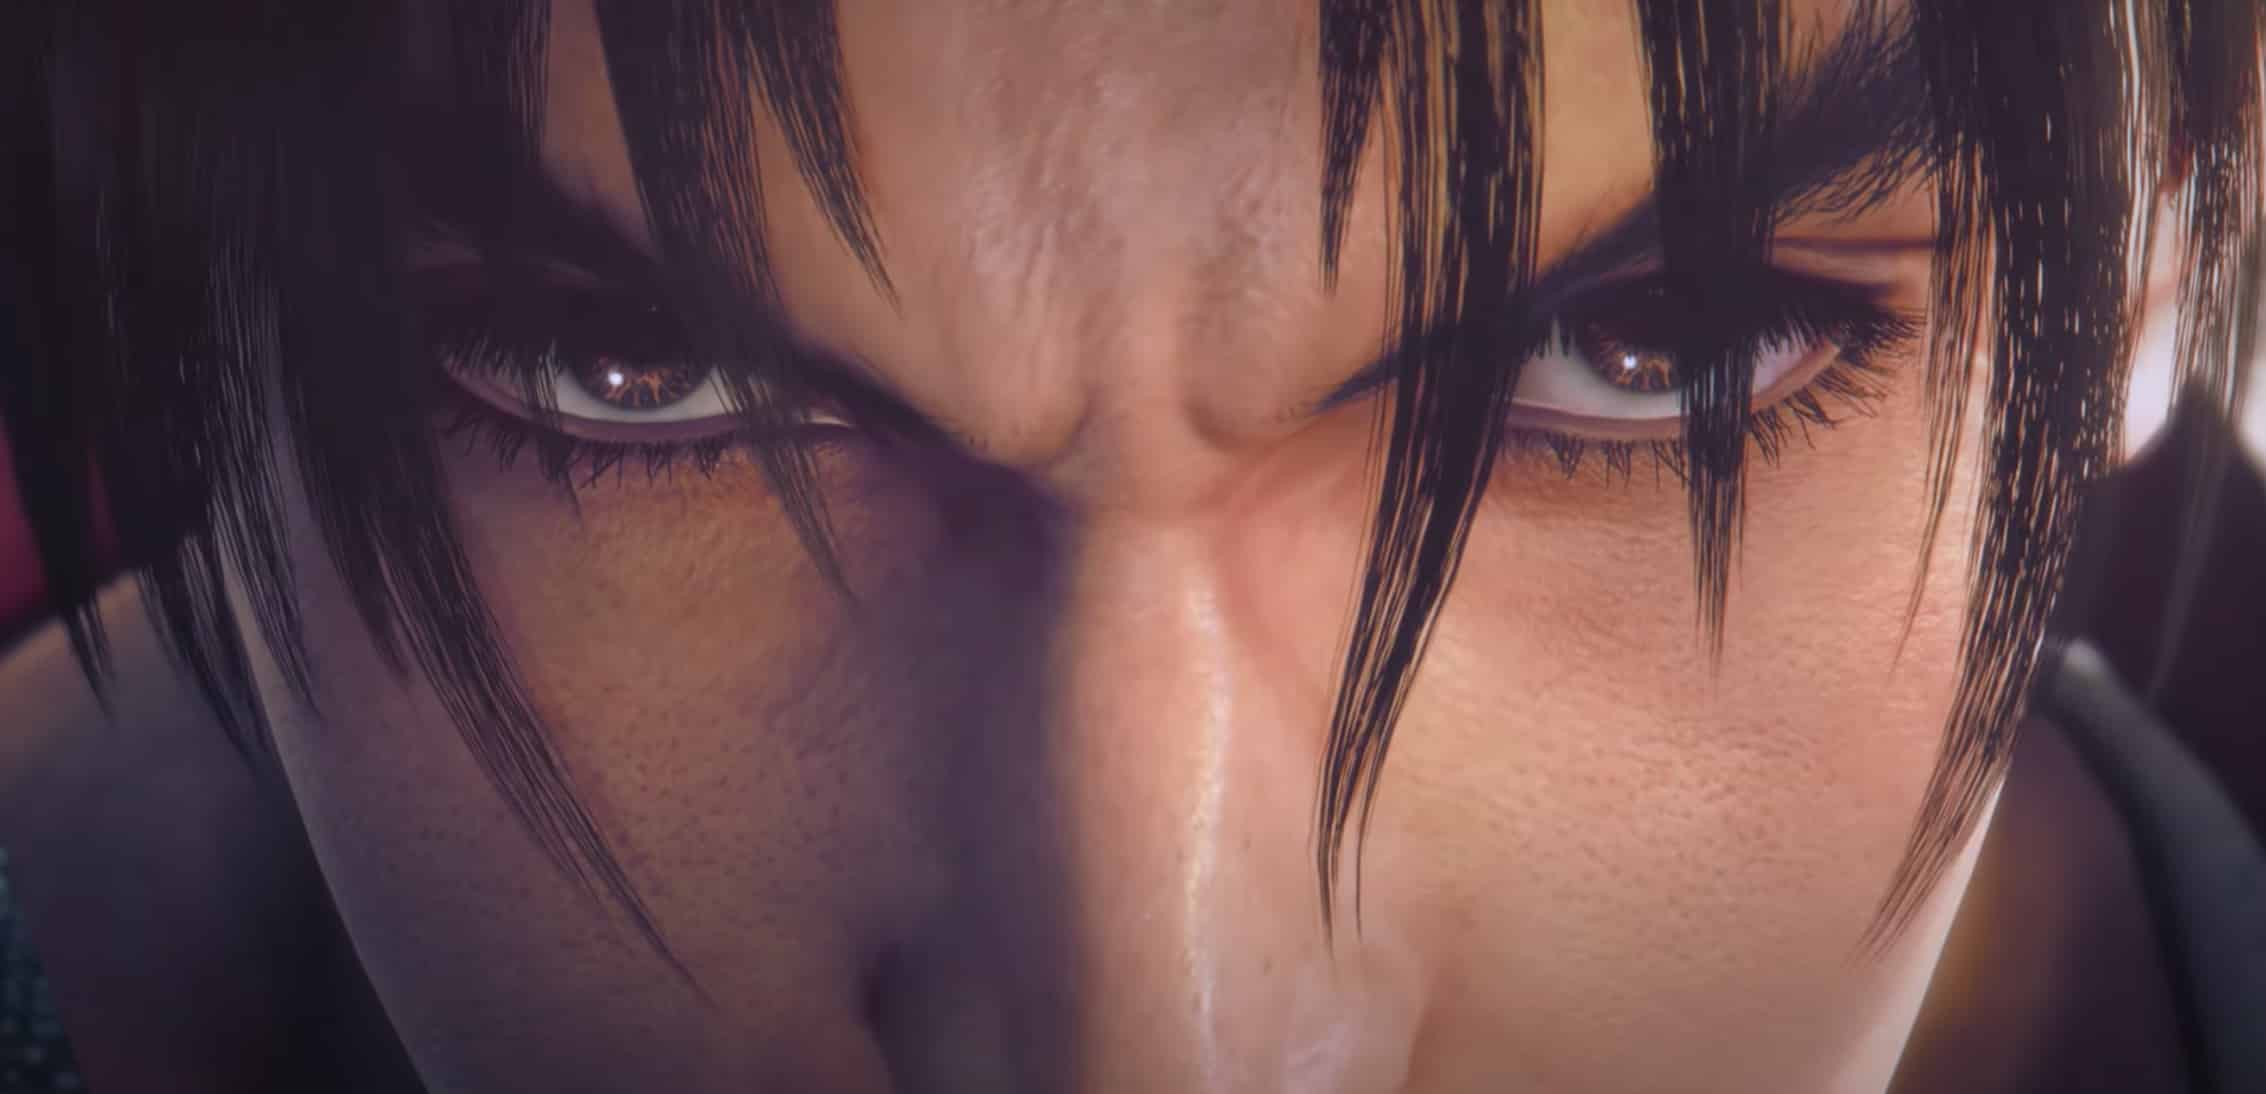 Tekken 8 Officially Revealed In New Cinematic Trailer - Game Informer